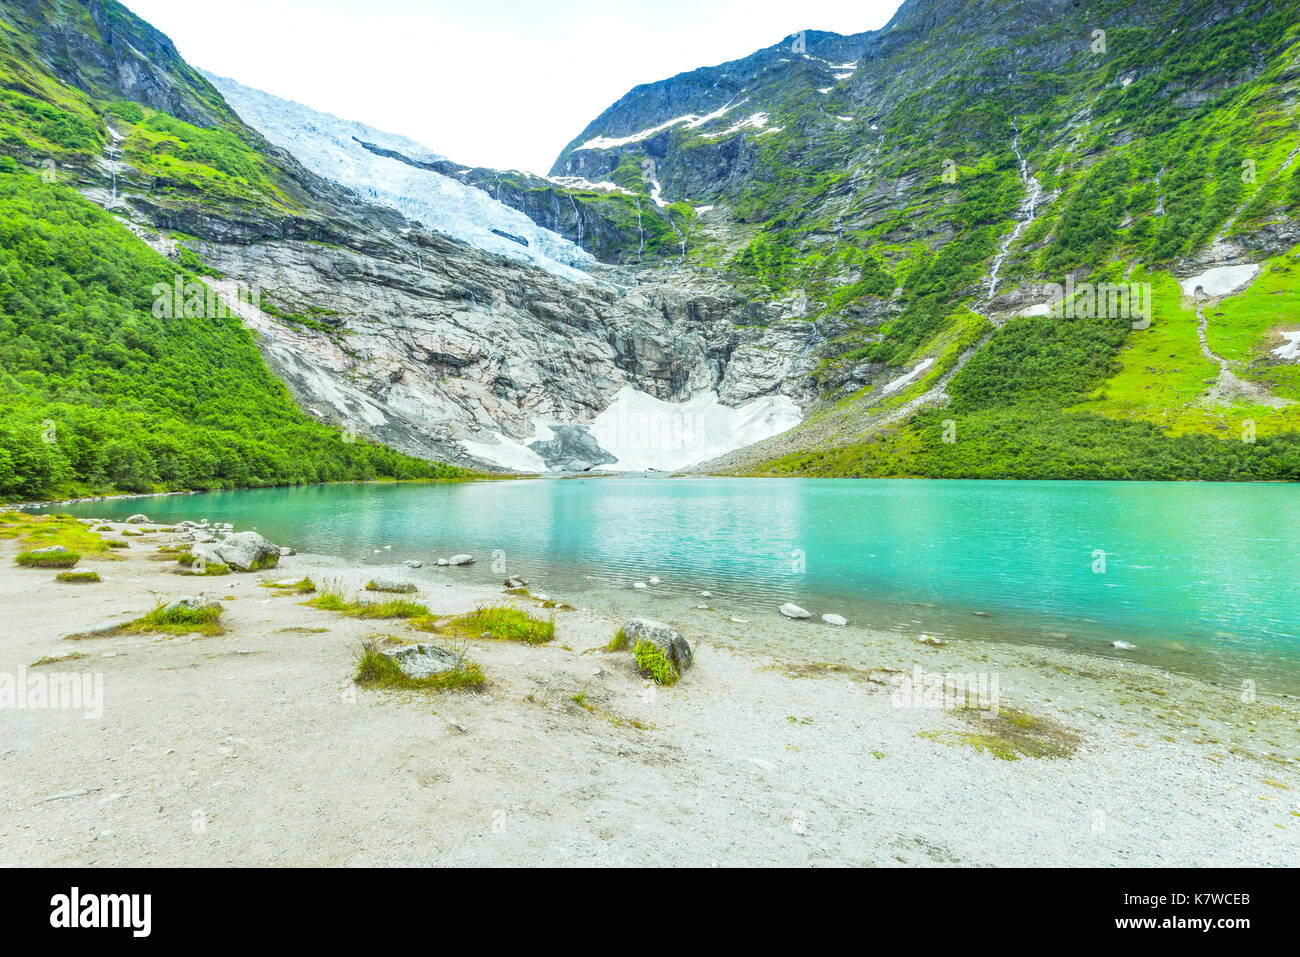 Ghiacciaio Boyabreen e il suo lago Brevatnet, ramo laterale del ghiacciaio Jostedalsbreen, Fjaerland, Norvegia Foto Stock